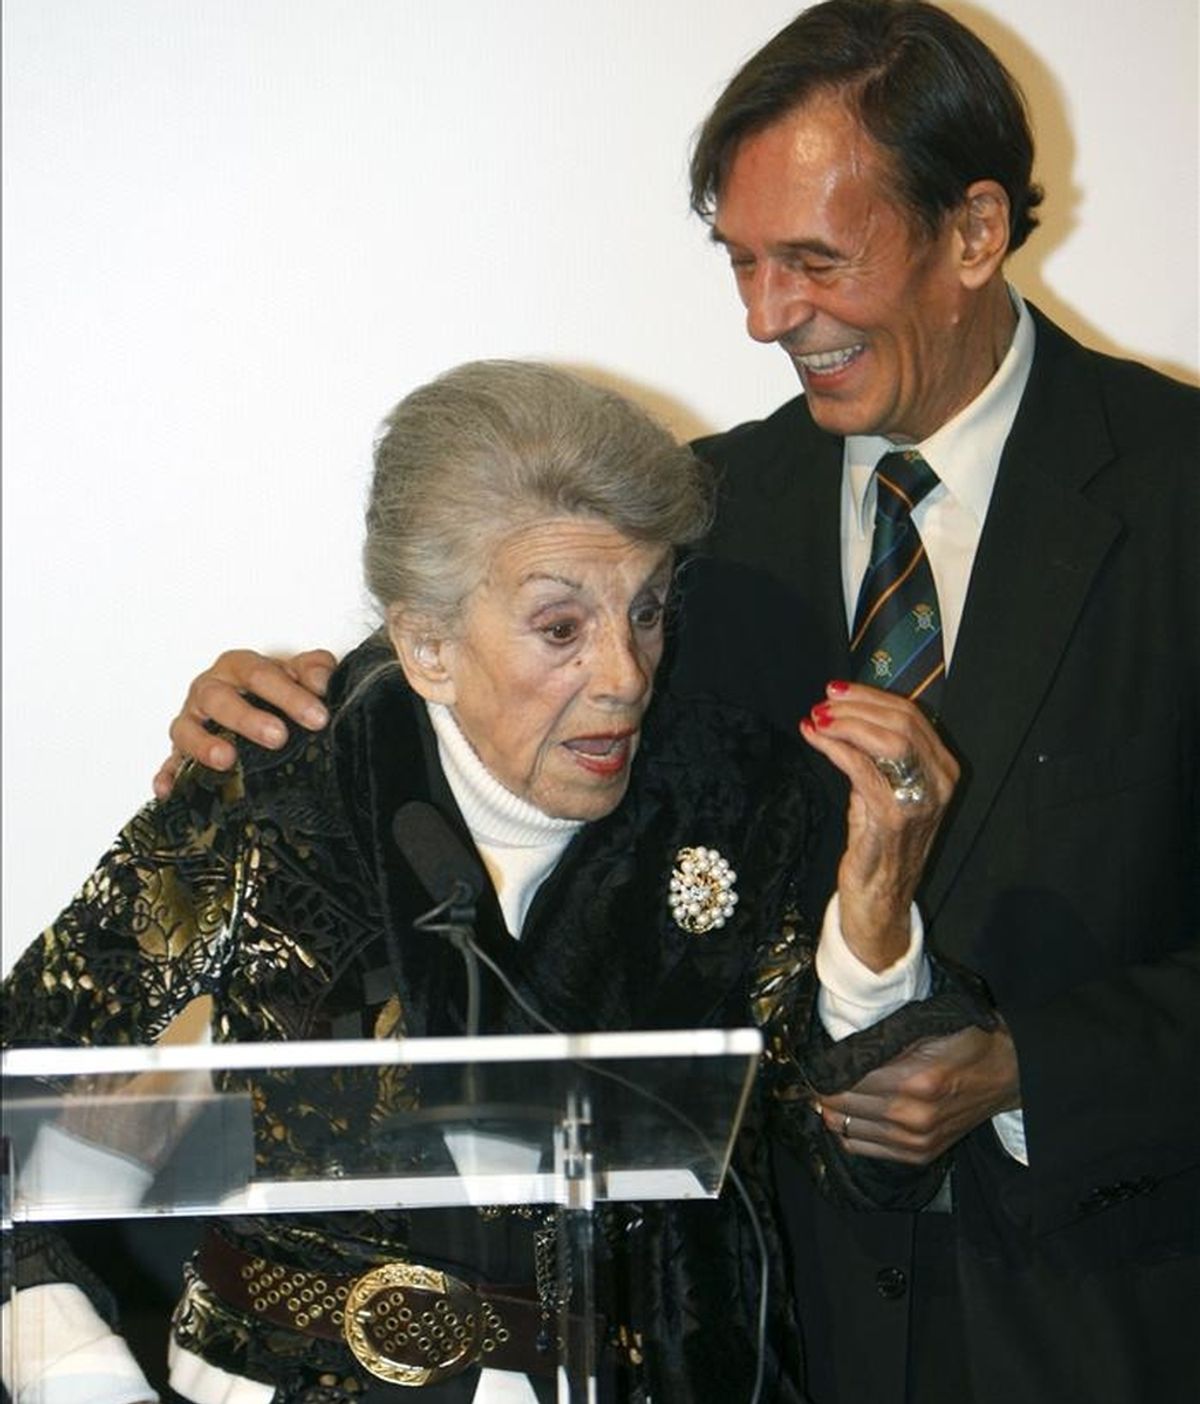 La actriz María Isbert, hija del actor Pepe Isbert, uno de los clásicos del cine y la escena españoles, acompañada de su hijo Tony, durante el homenaje que le rindió la Academia de Cine, de la que ha sido nombrada miembro de honor a sus 91 años. EFE/Archivo